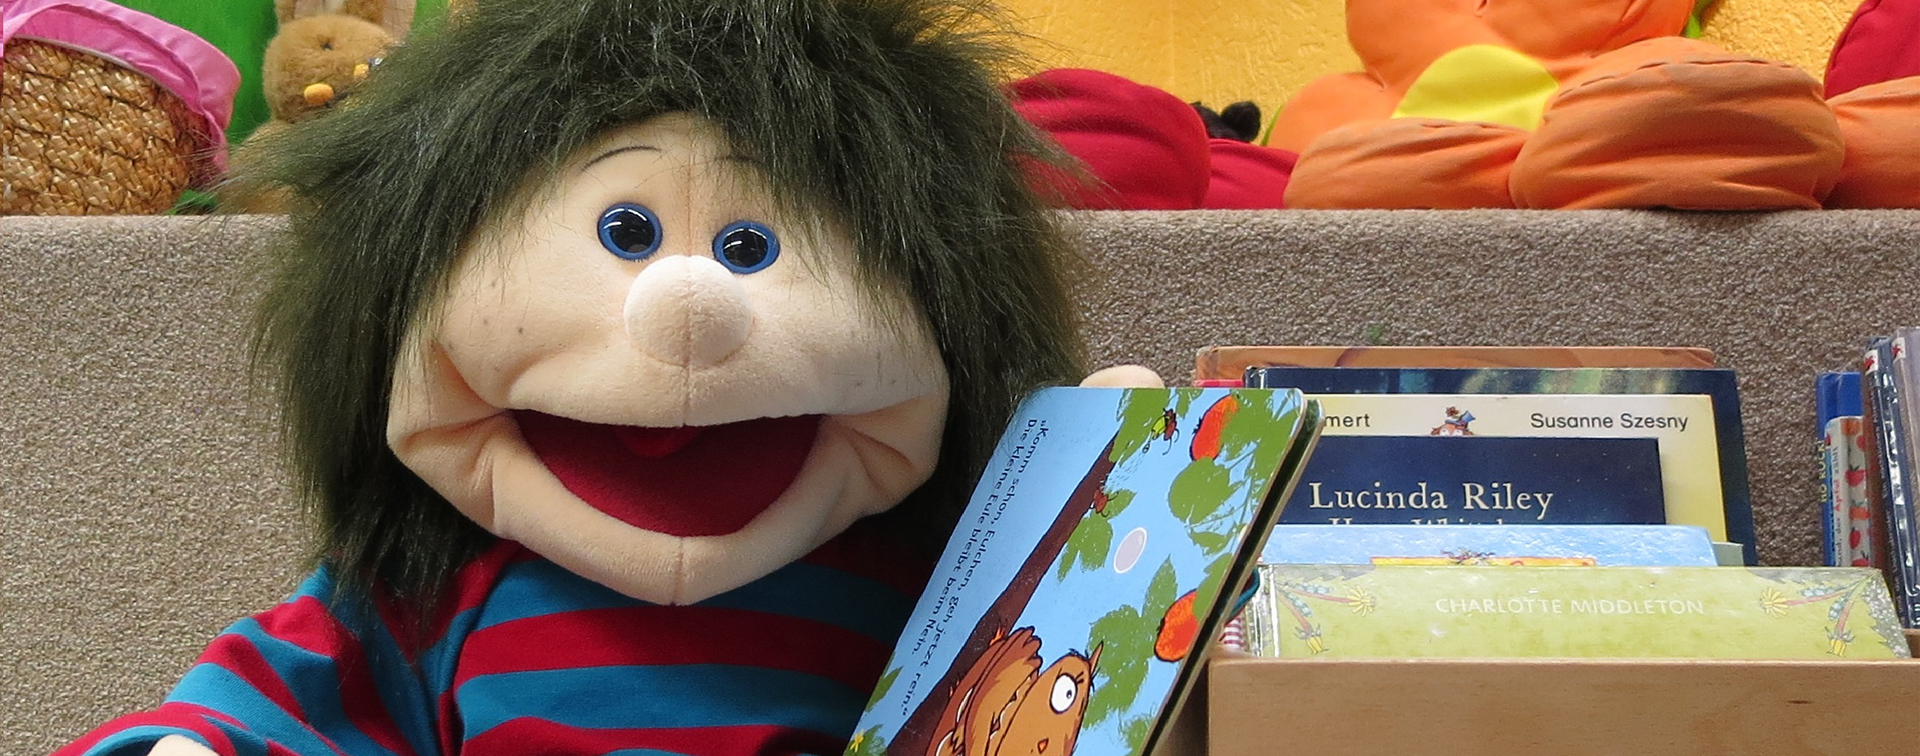 Handpuppe Max stöbert viel in unseren Kisten mit den Kinderbüchern und liebt die vielen spanenden Geschichten und Abenteuer.